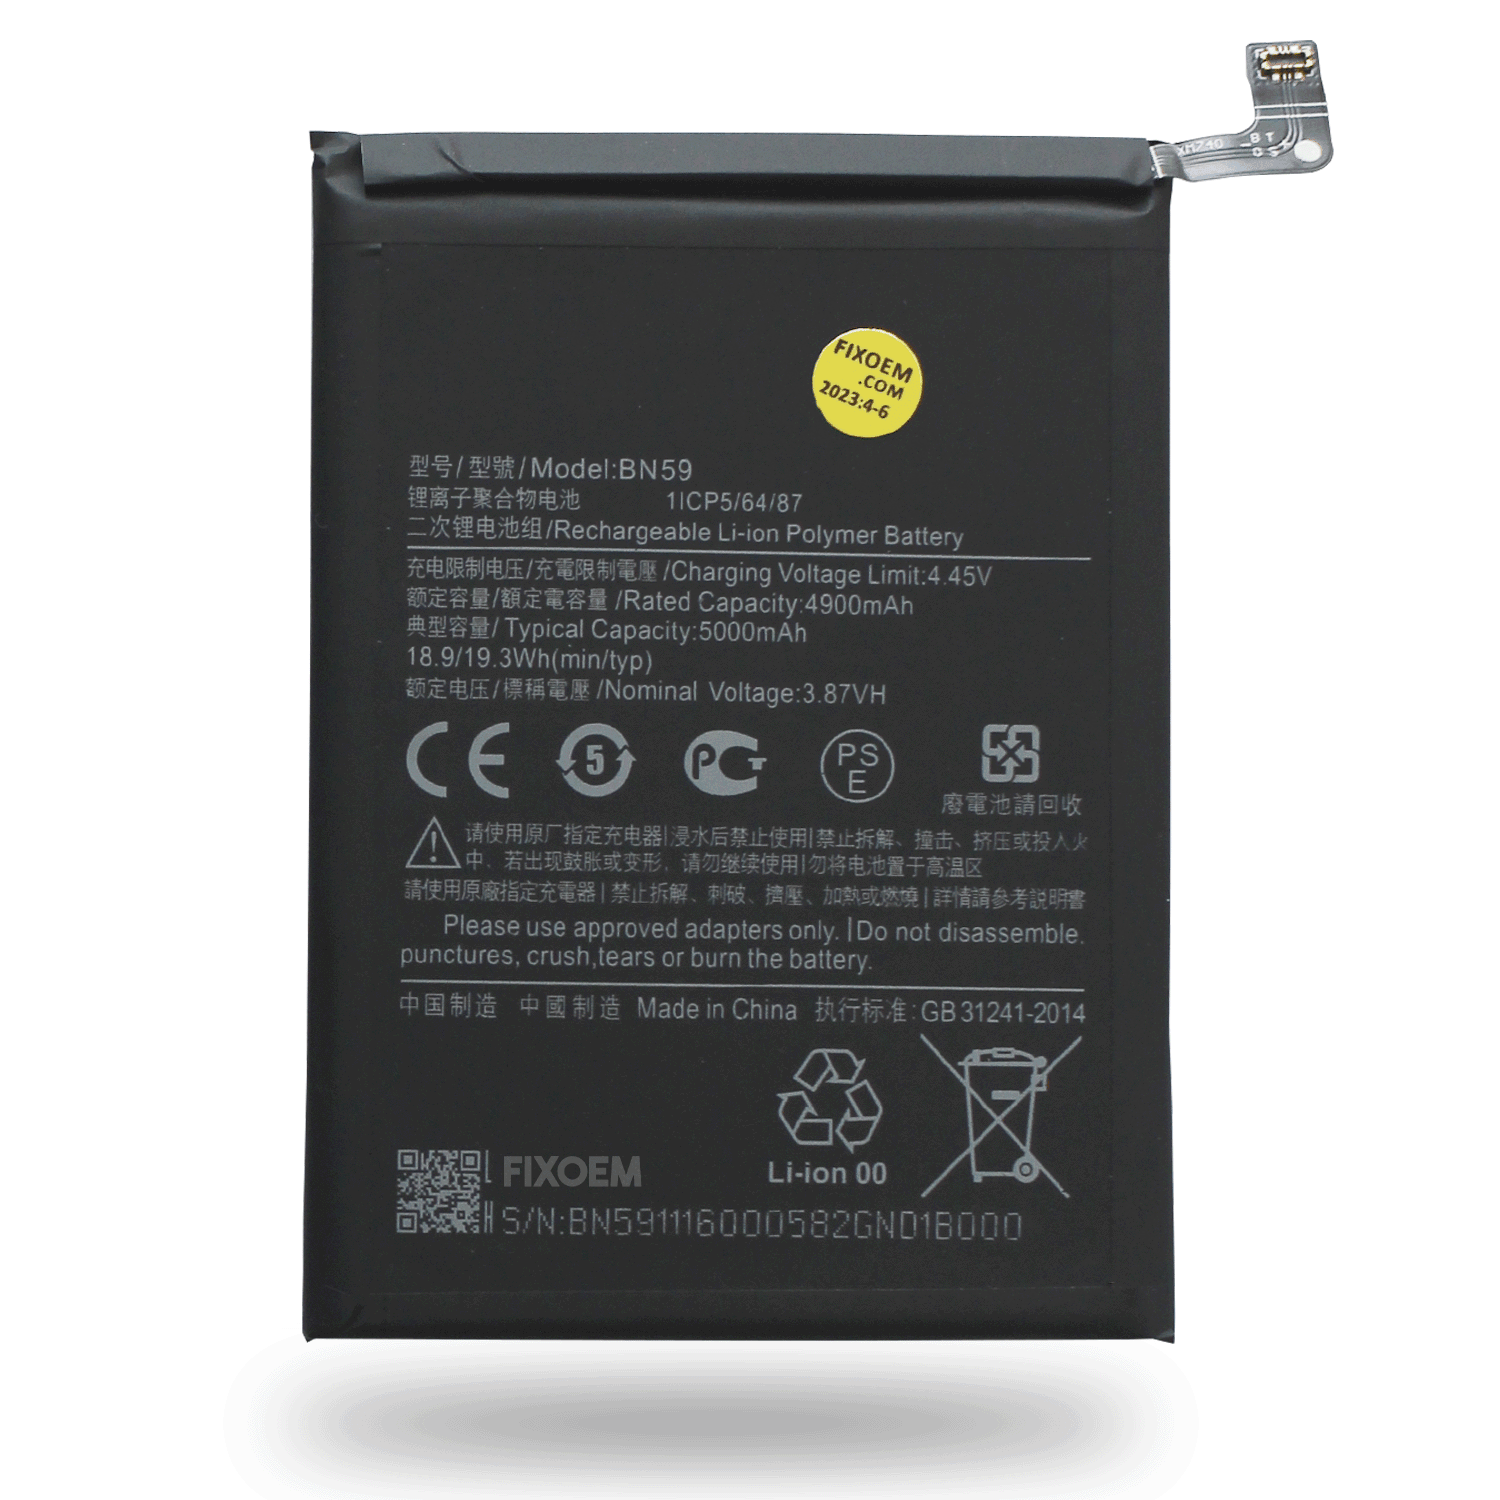 Bateria Xiaomi Redmi Note 10 / Redmi Note 10S / Redmi Note 10 Pro Bn59 a solo $ 190.00 Refaccion y puestos celulares, refurbish y microelectronica.- FixOEM